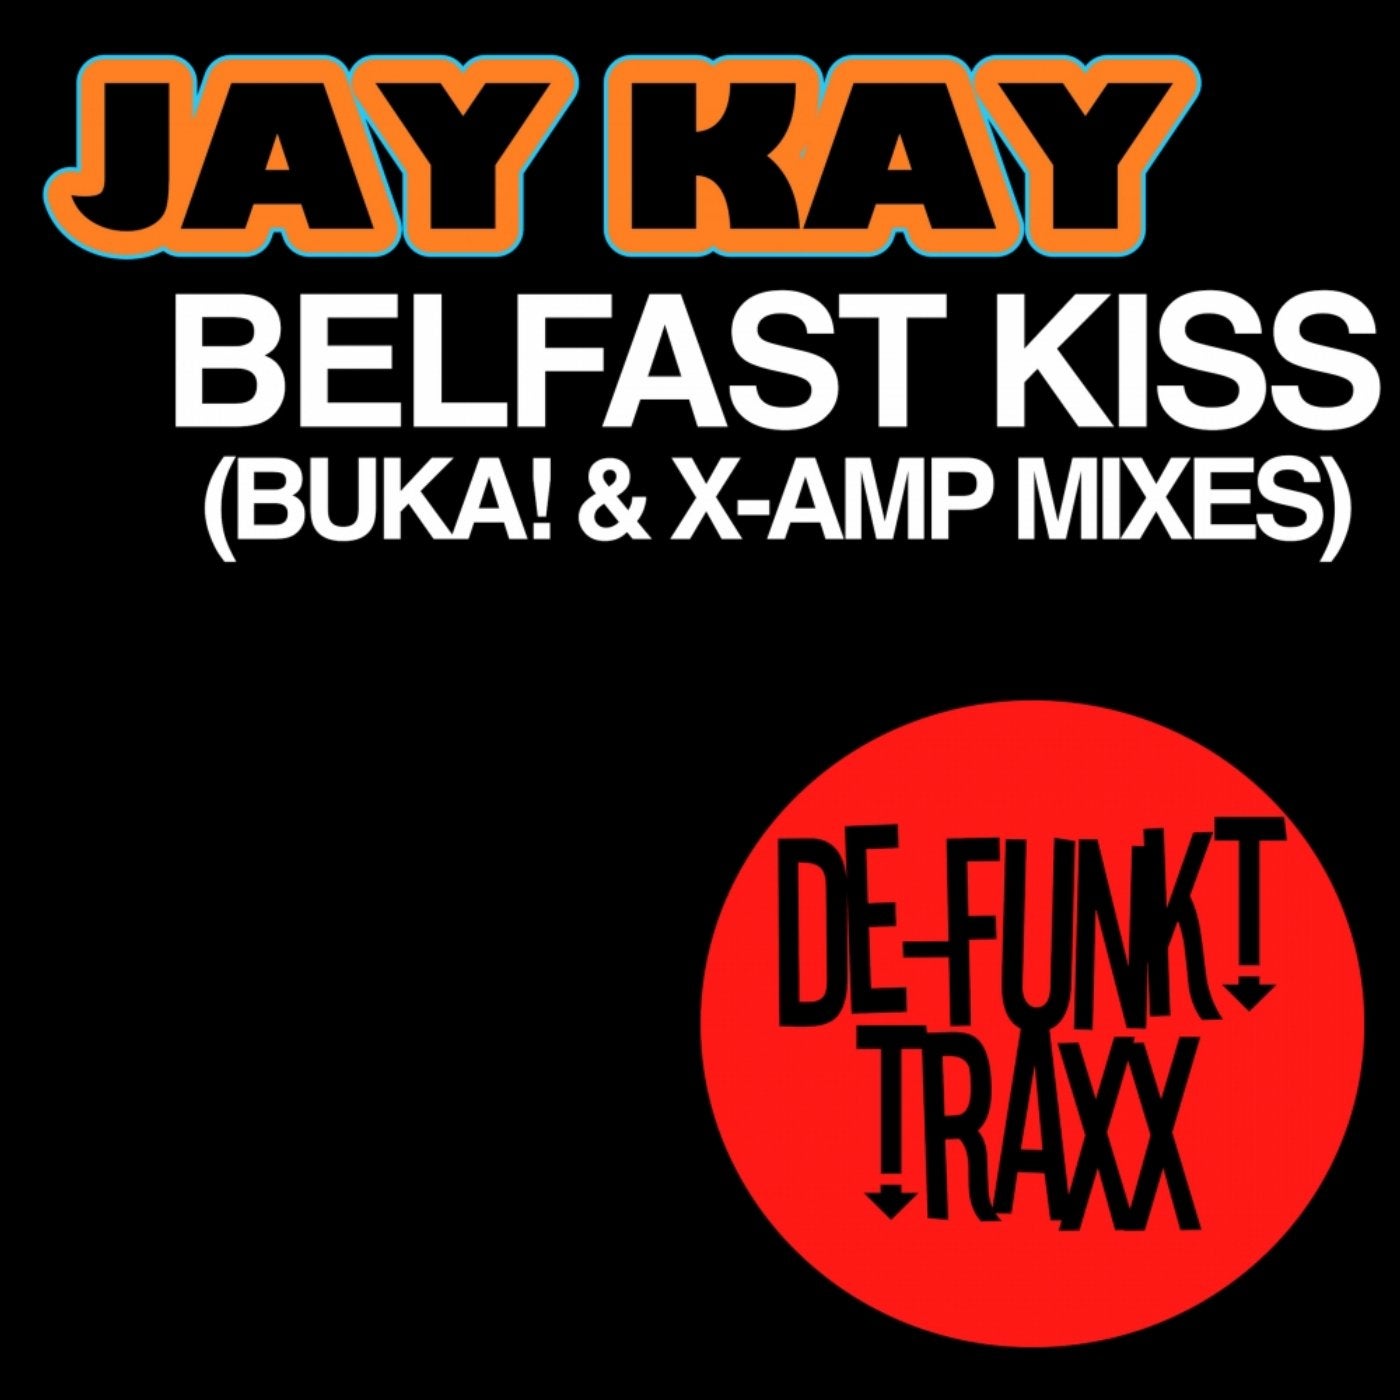 Belfast Kiss (BUKA! & X-AMP Mixes)